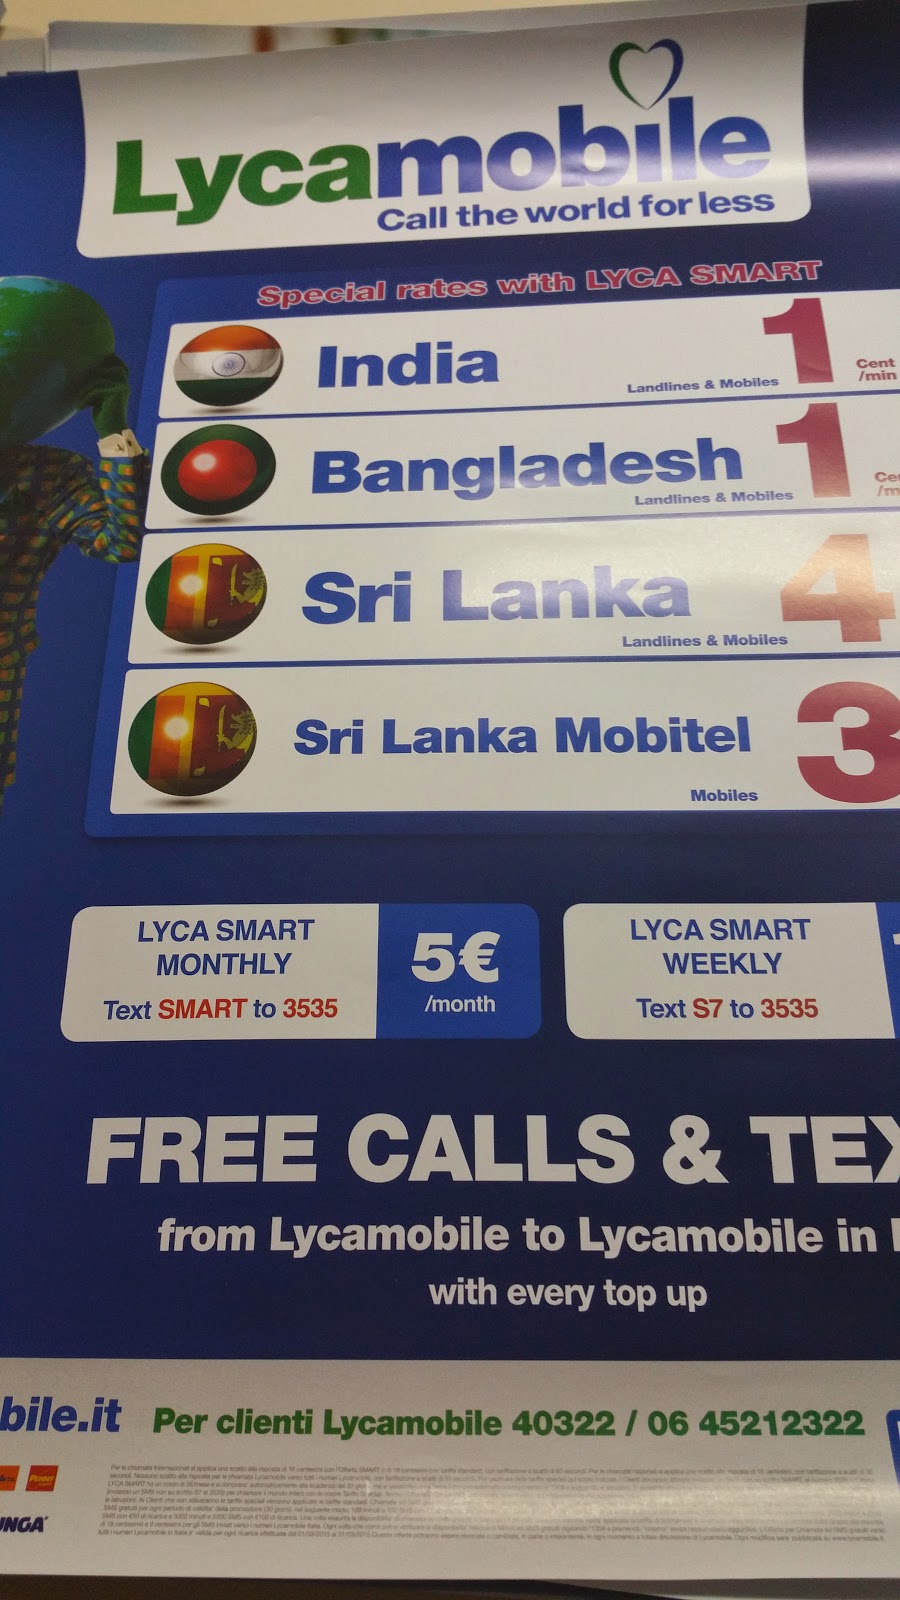 Lycamobile per chiamare a 1 cent in India, Bangladesh, Sri Lanka